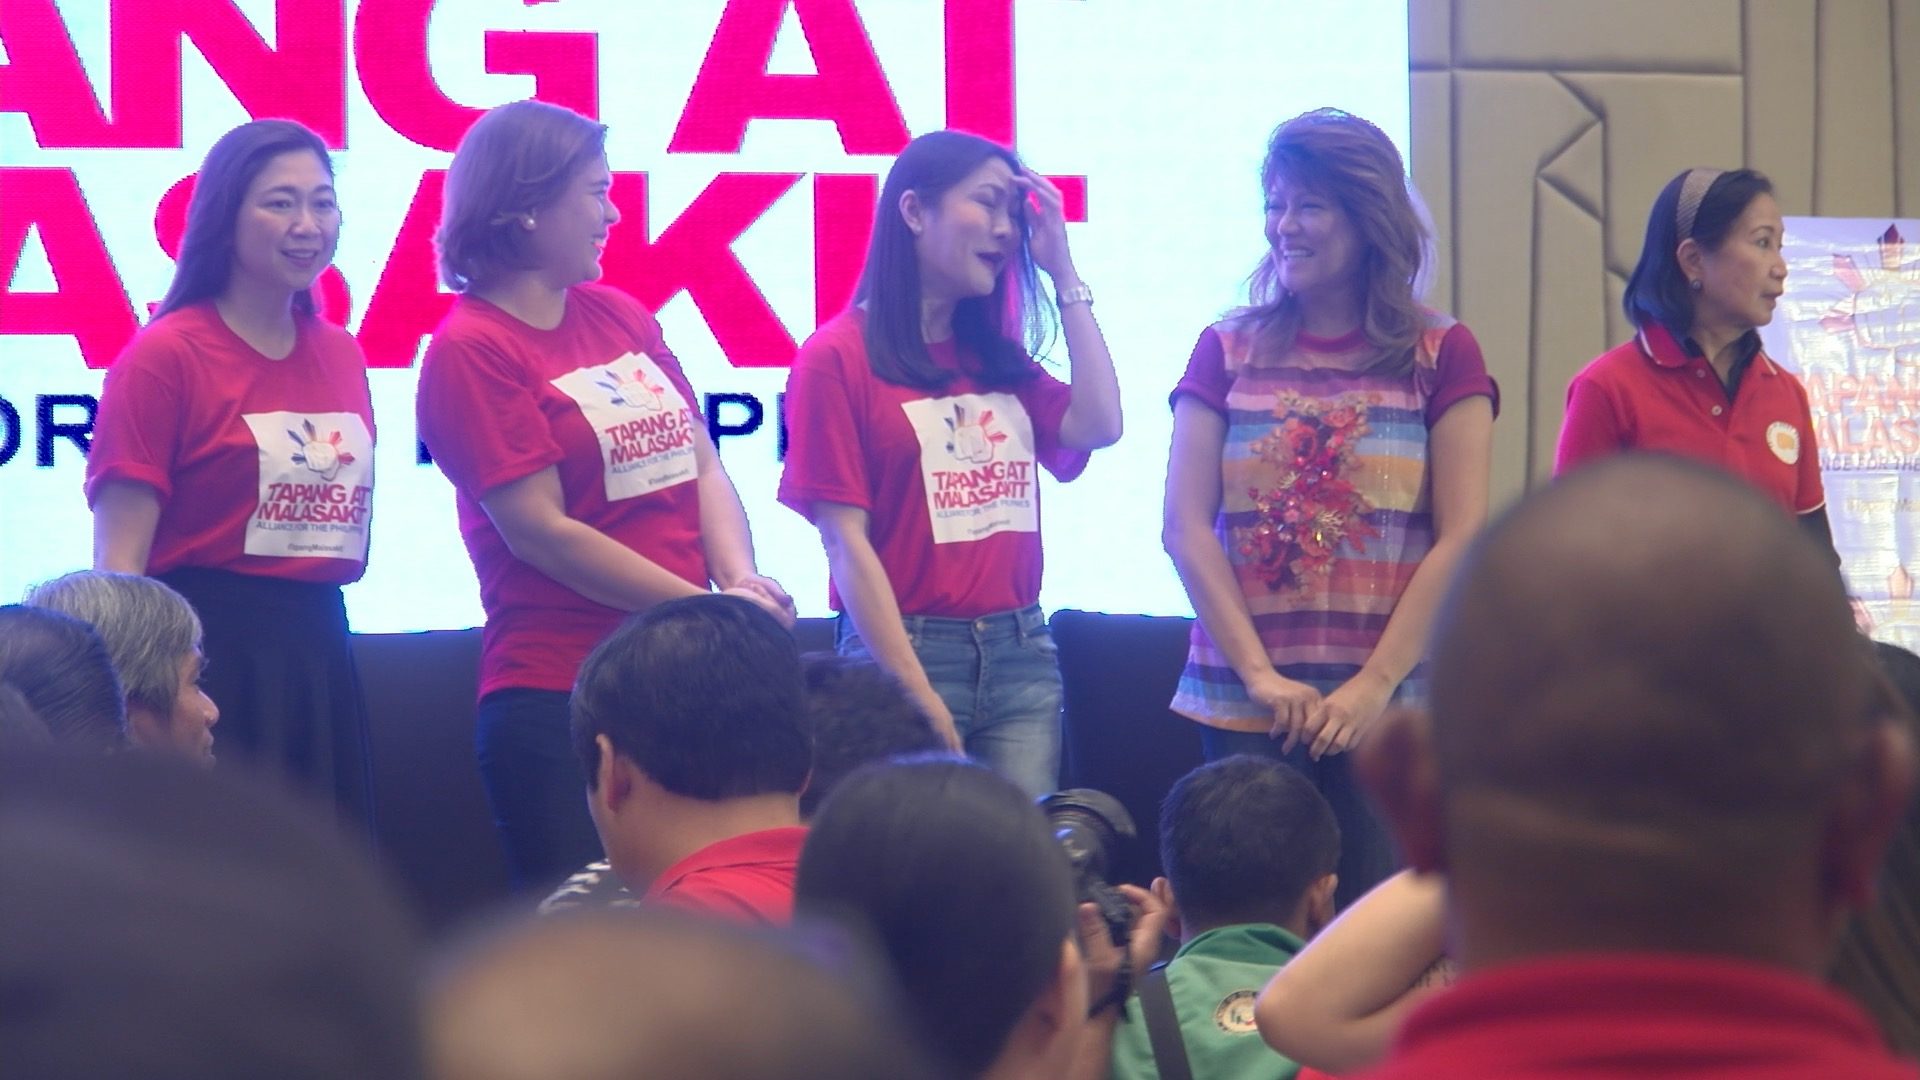 IN PHOTOS: Sara Duterte launches Tapang at Malasakit Alliance